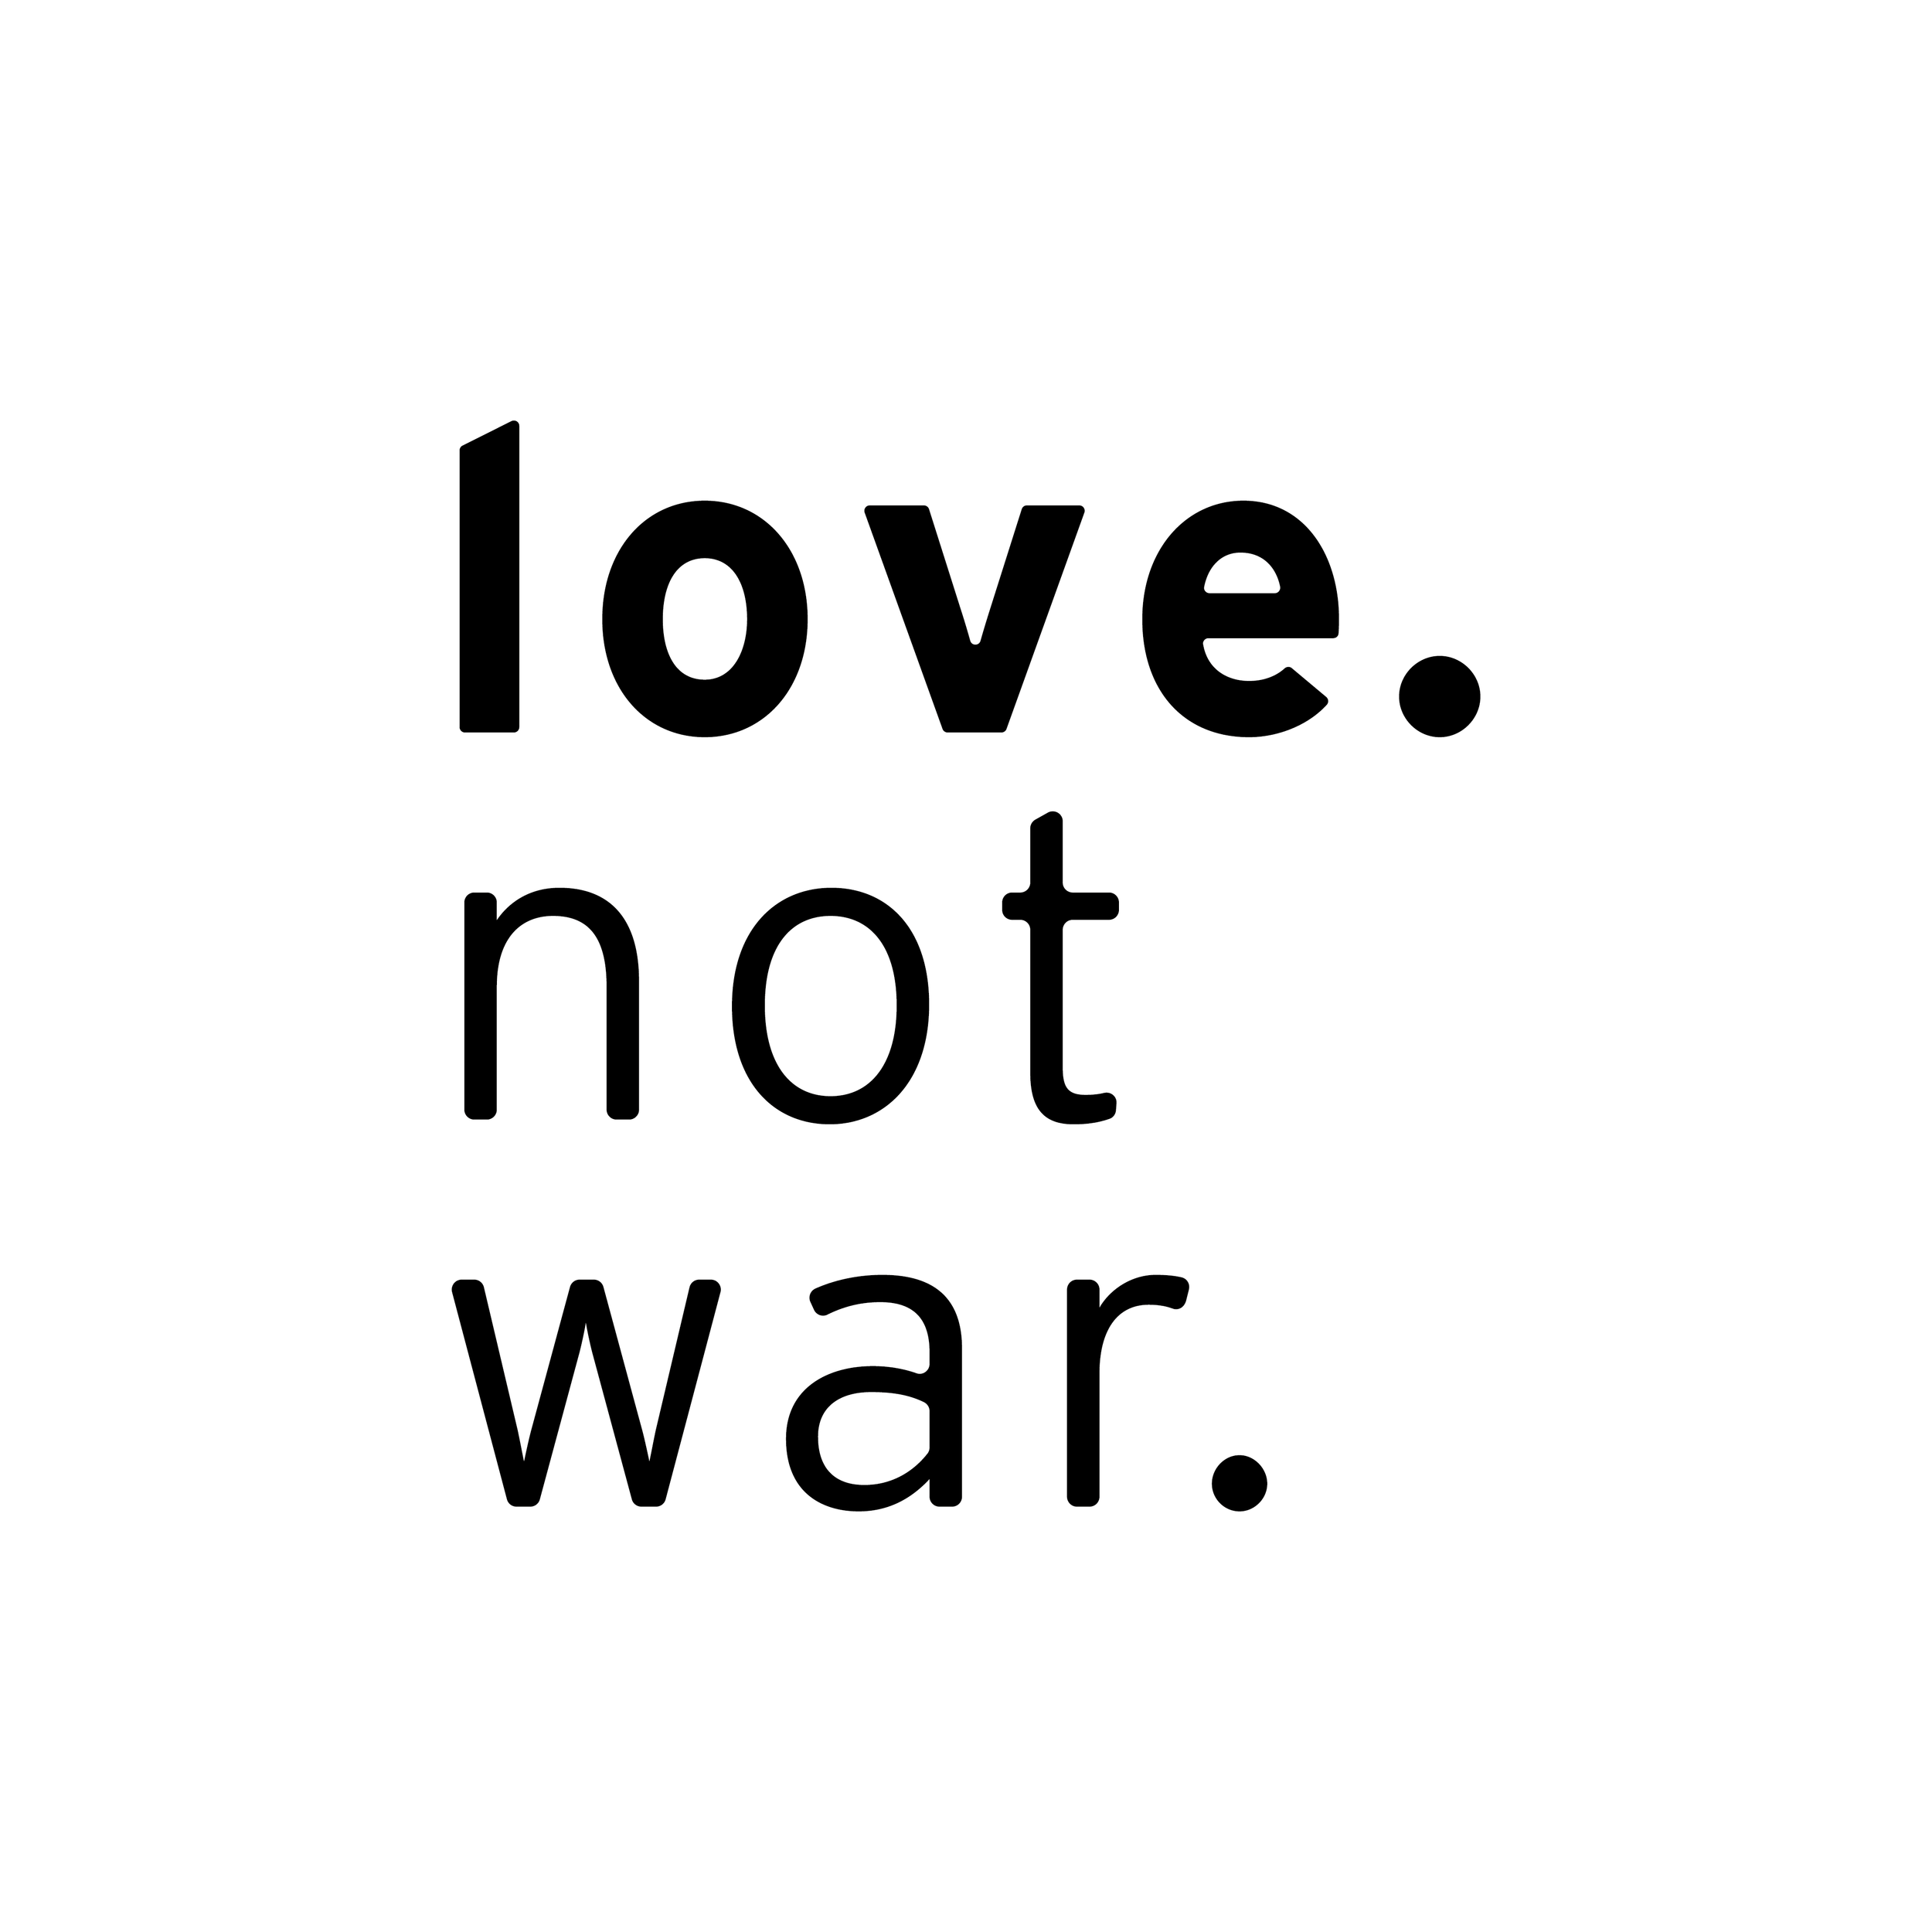 Love not war